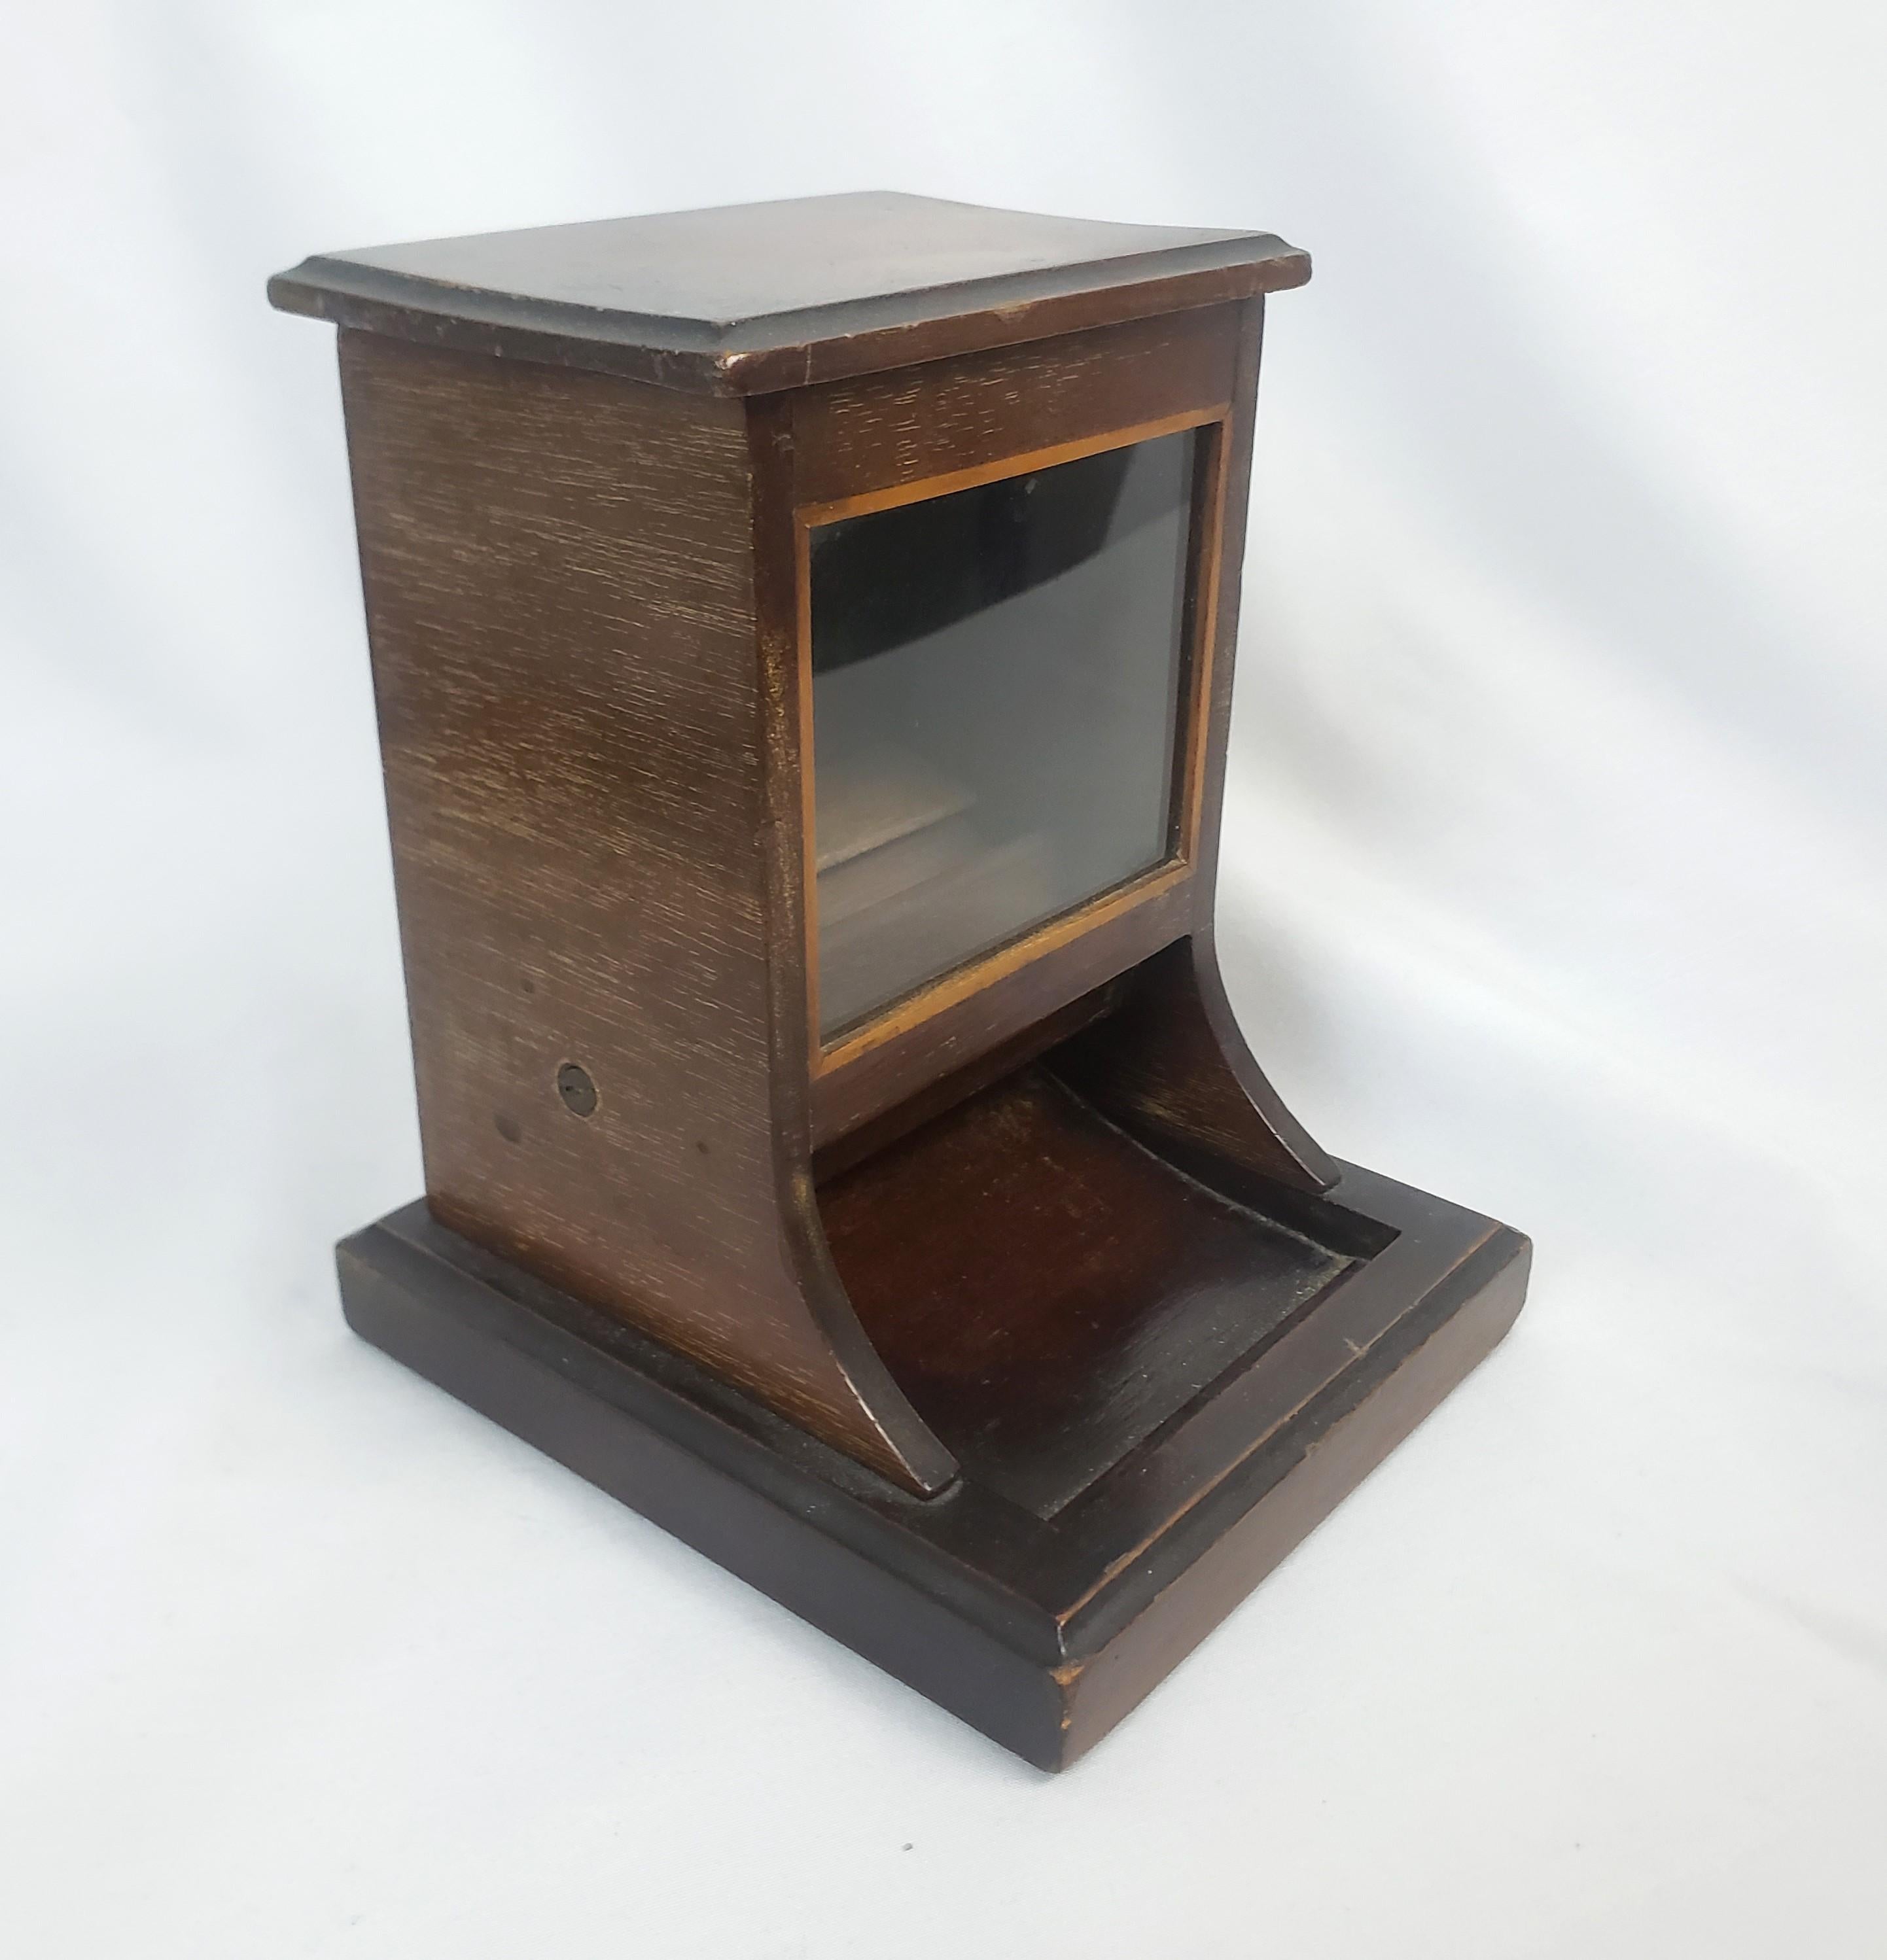 Ce distributeur de cigarettes de table antique a été fabriqué par la célèbre firme anglaise Dunhill. Il date d'environ 1920 et a été réalisé dans le style Art déco de l'époque. Le distributeur est composé de bois avec une fenêtre frontale en verre